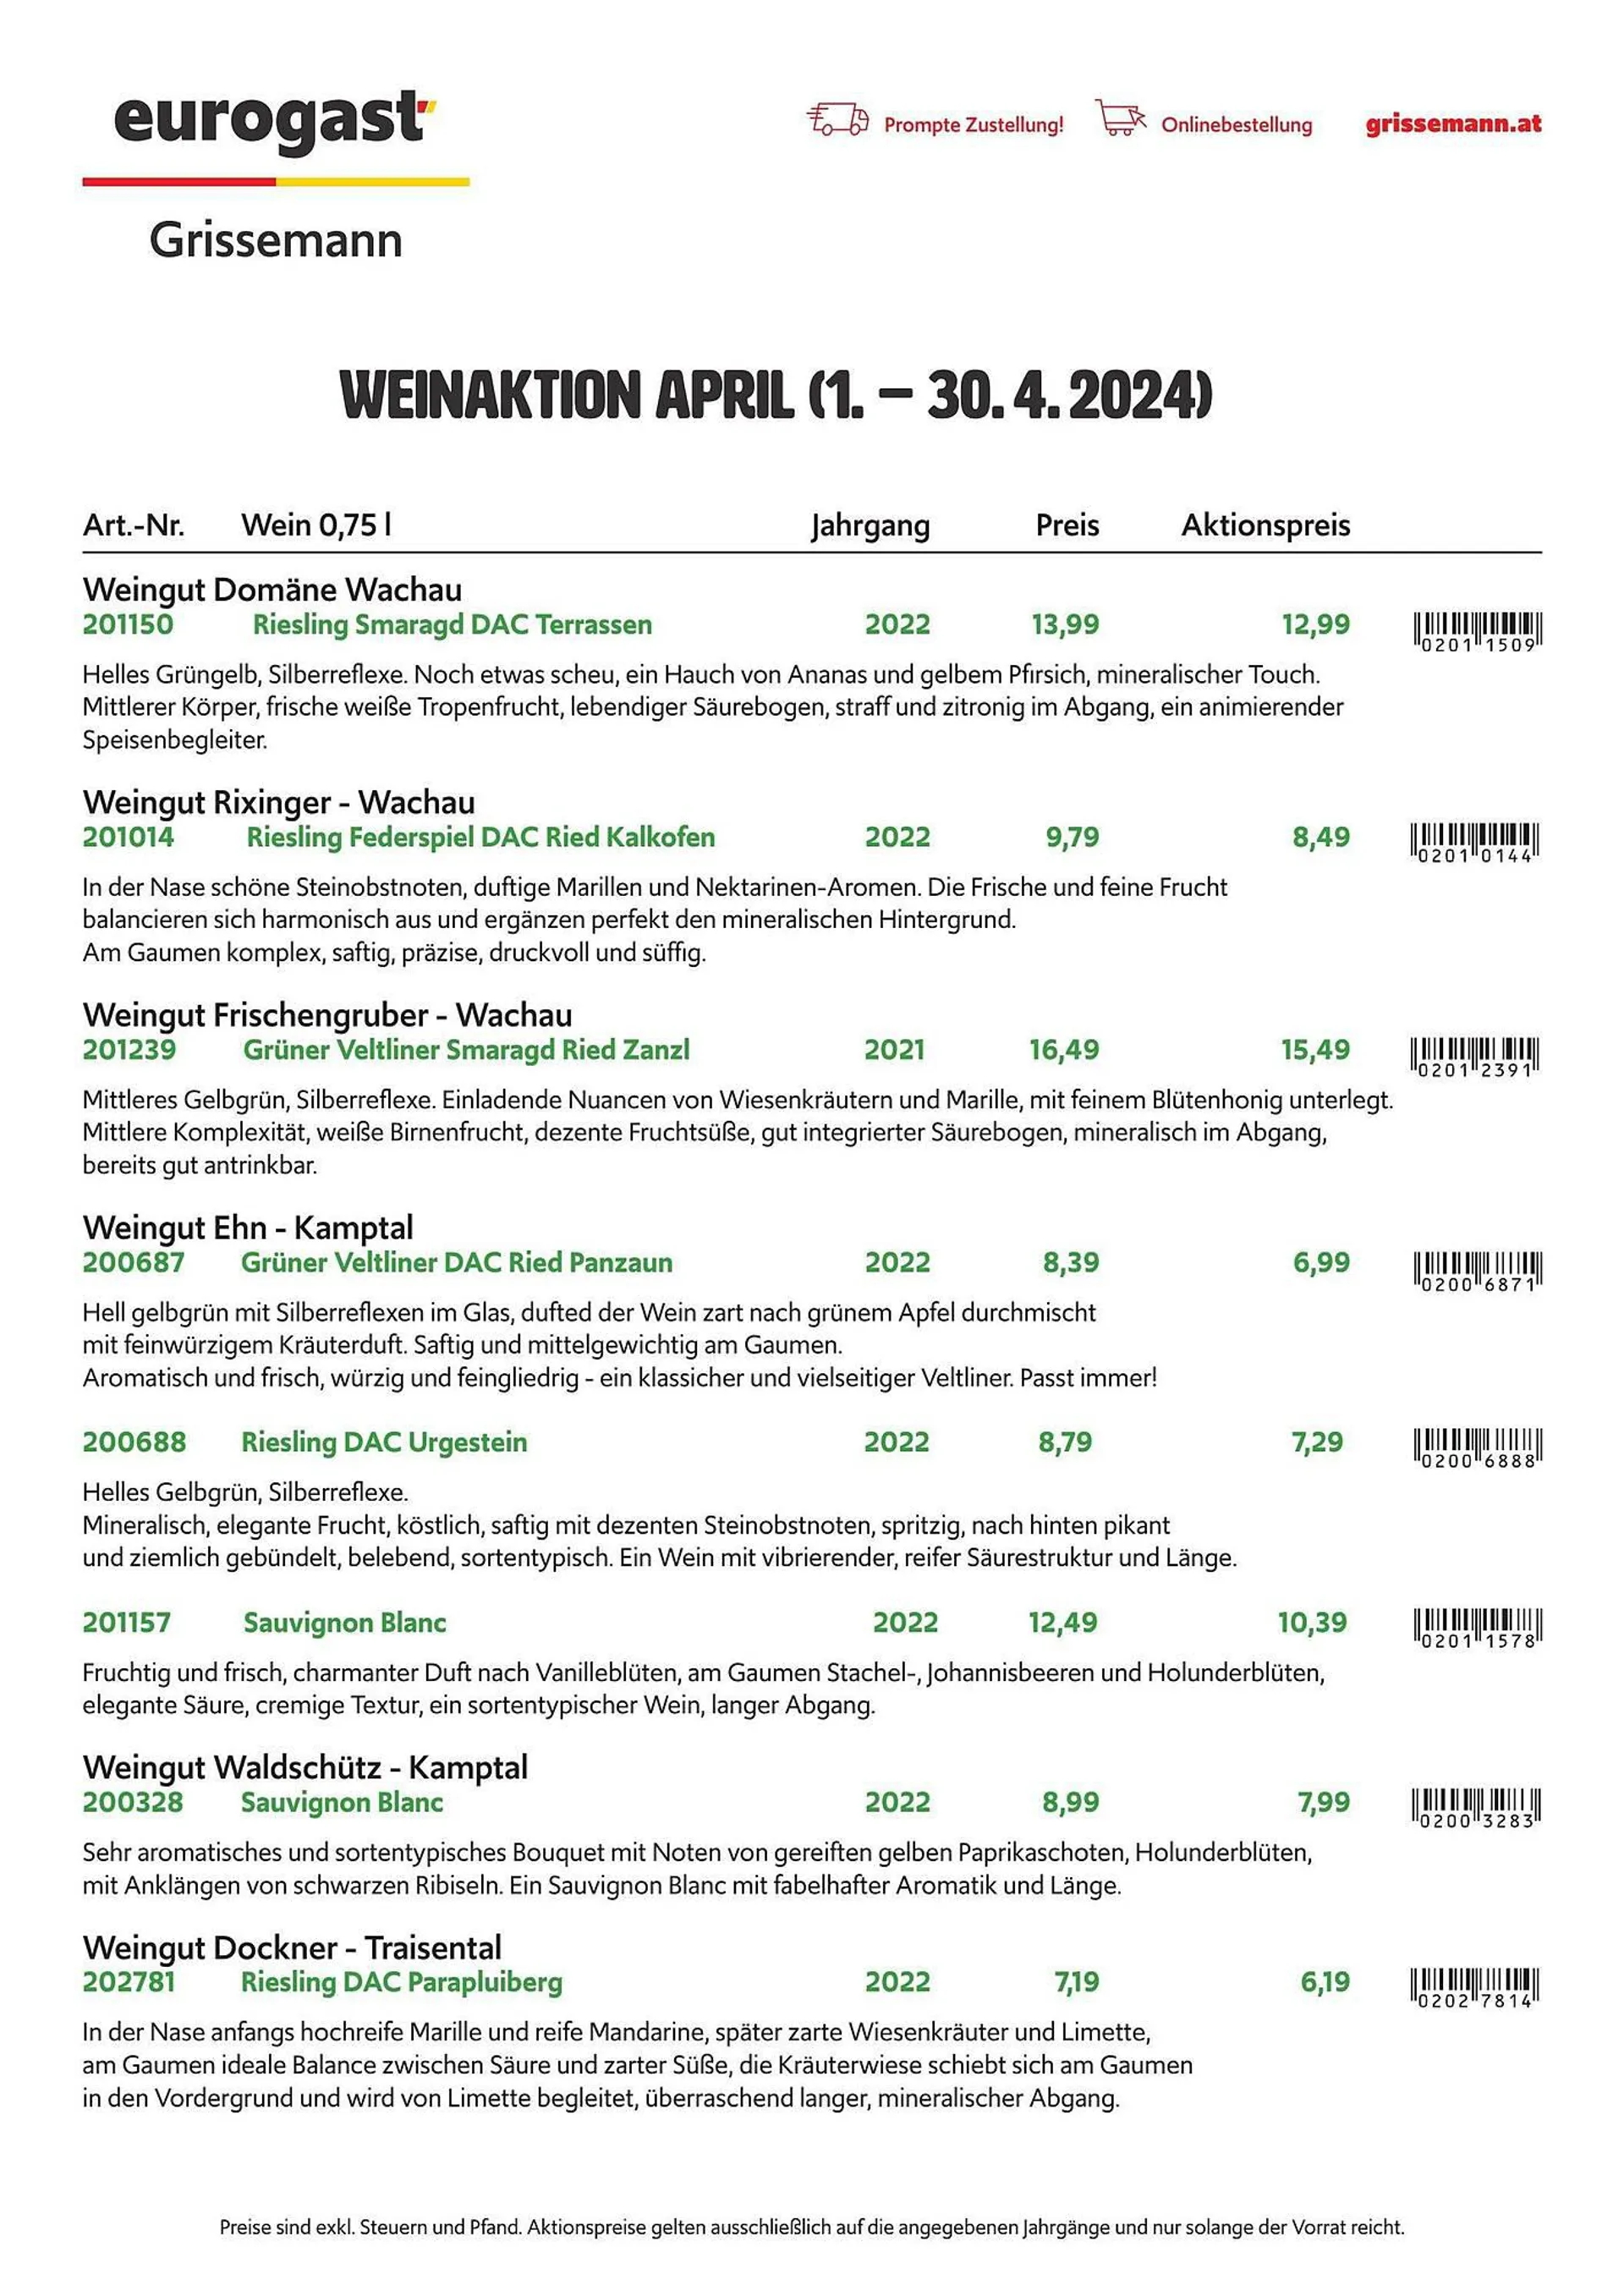 Eurogast Grissemann Flugblatt von 2. April bis 30. April 2024 - Flugblätt seite  1